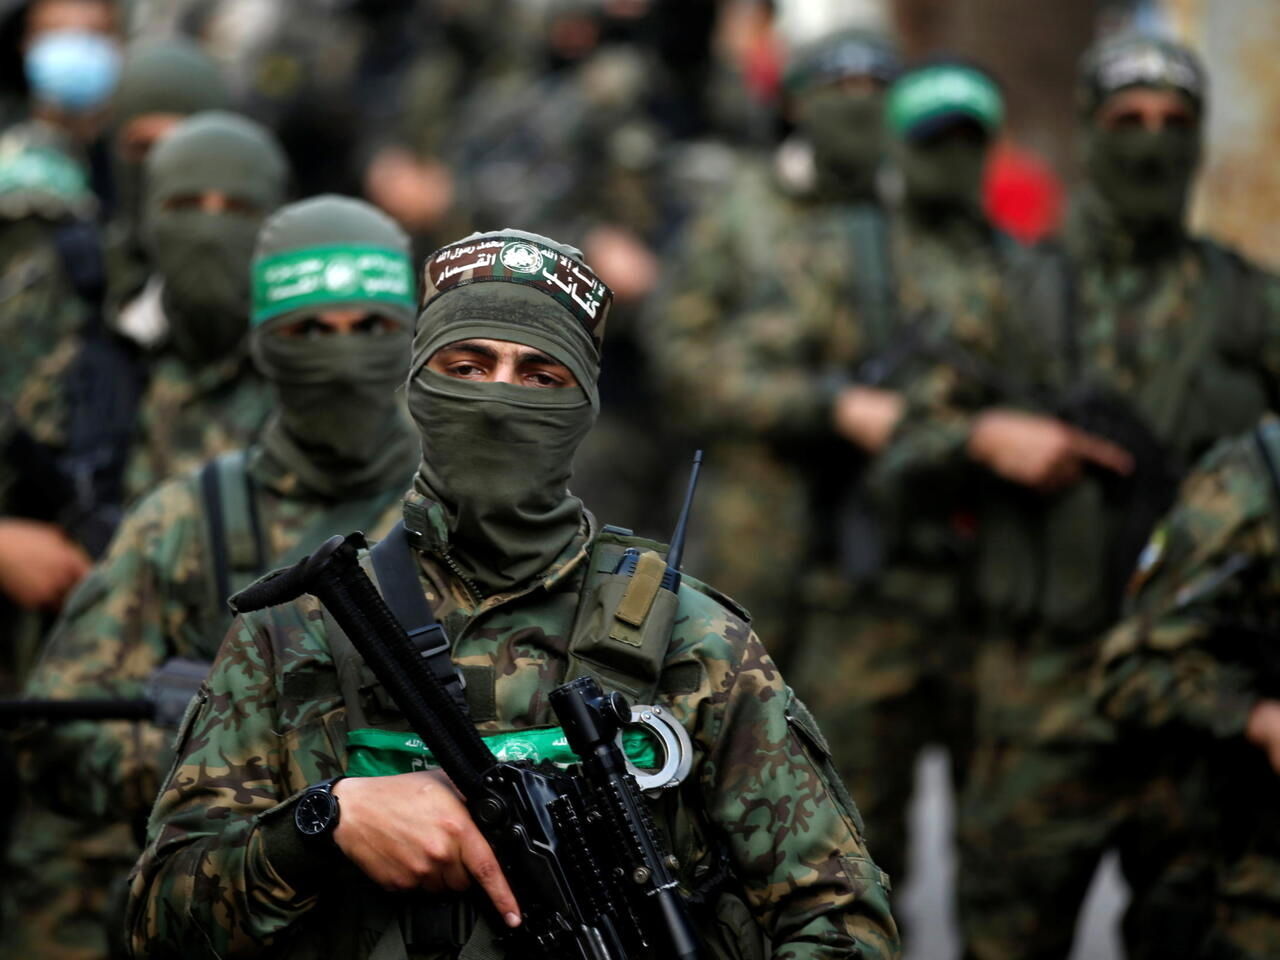 فوری/ فرمانده حماس کشته شد/ ارتش اسرائیل بیانیه داد؛ انتقام گرفتیم!